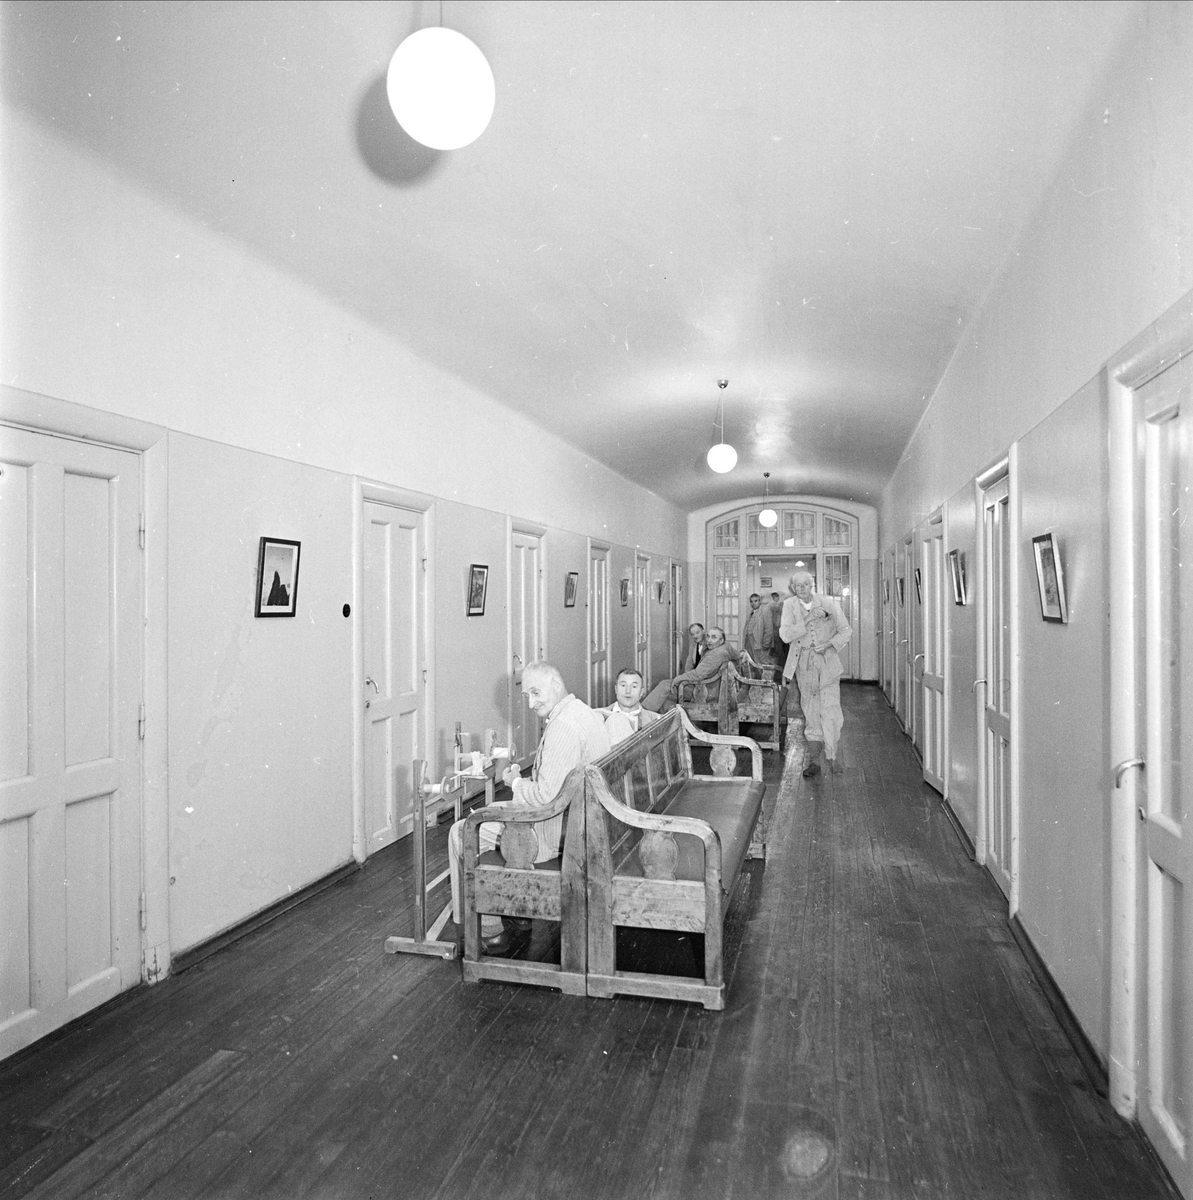 Ulleråkers sjukhus i Uppsala 1956. ”Kala väggar, ett mörkt
trägolv och tråkig belysning ger ett intryck av ödslighet.
Sysselsättning är ovanlig. Patienten närmast kameran är ett
undantag som bekräftar regeln” skrev Expressen.